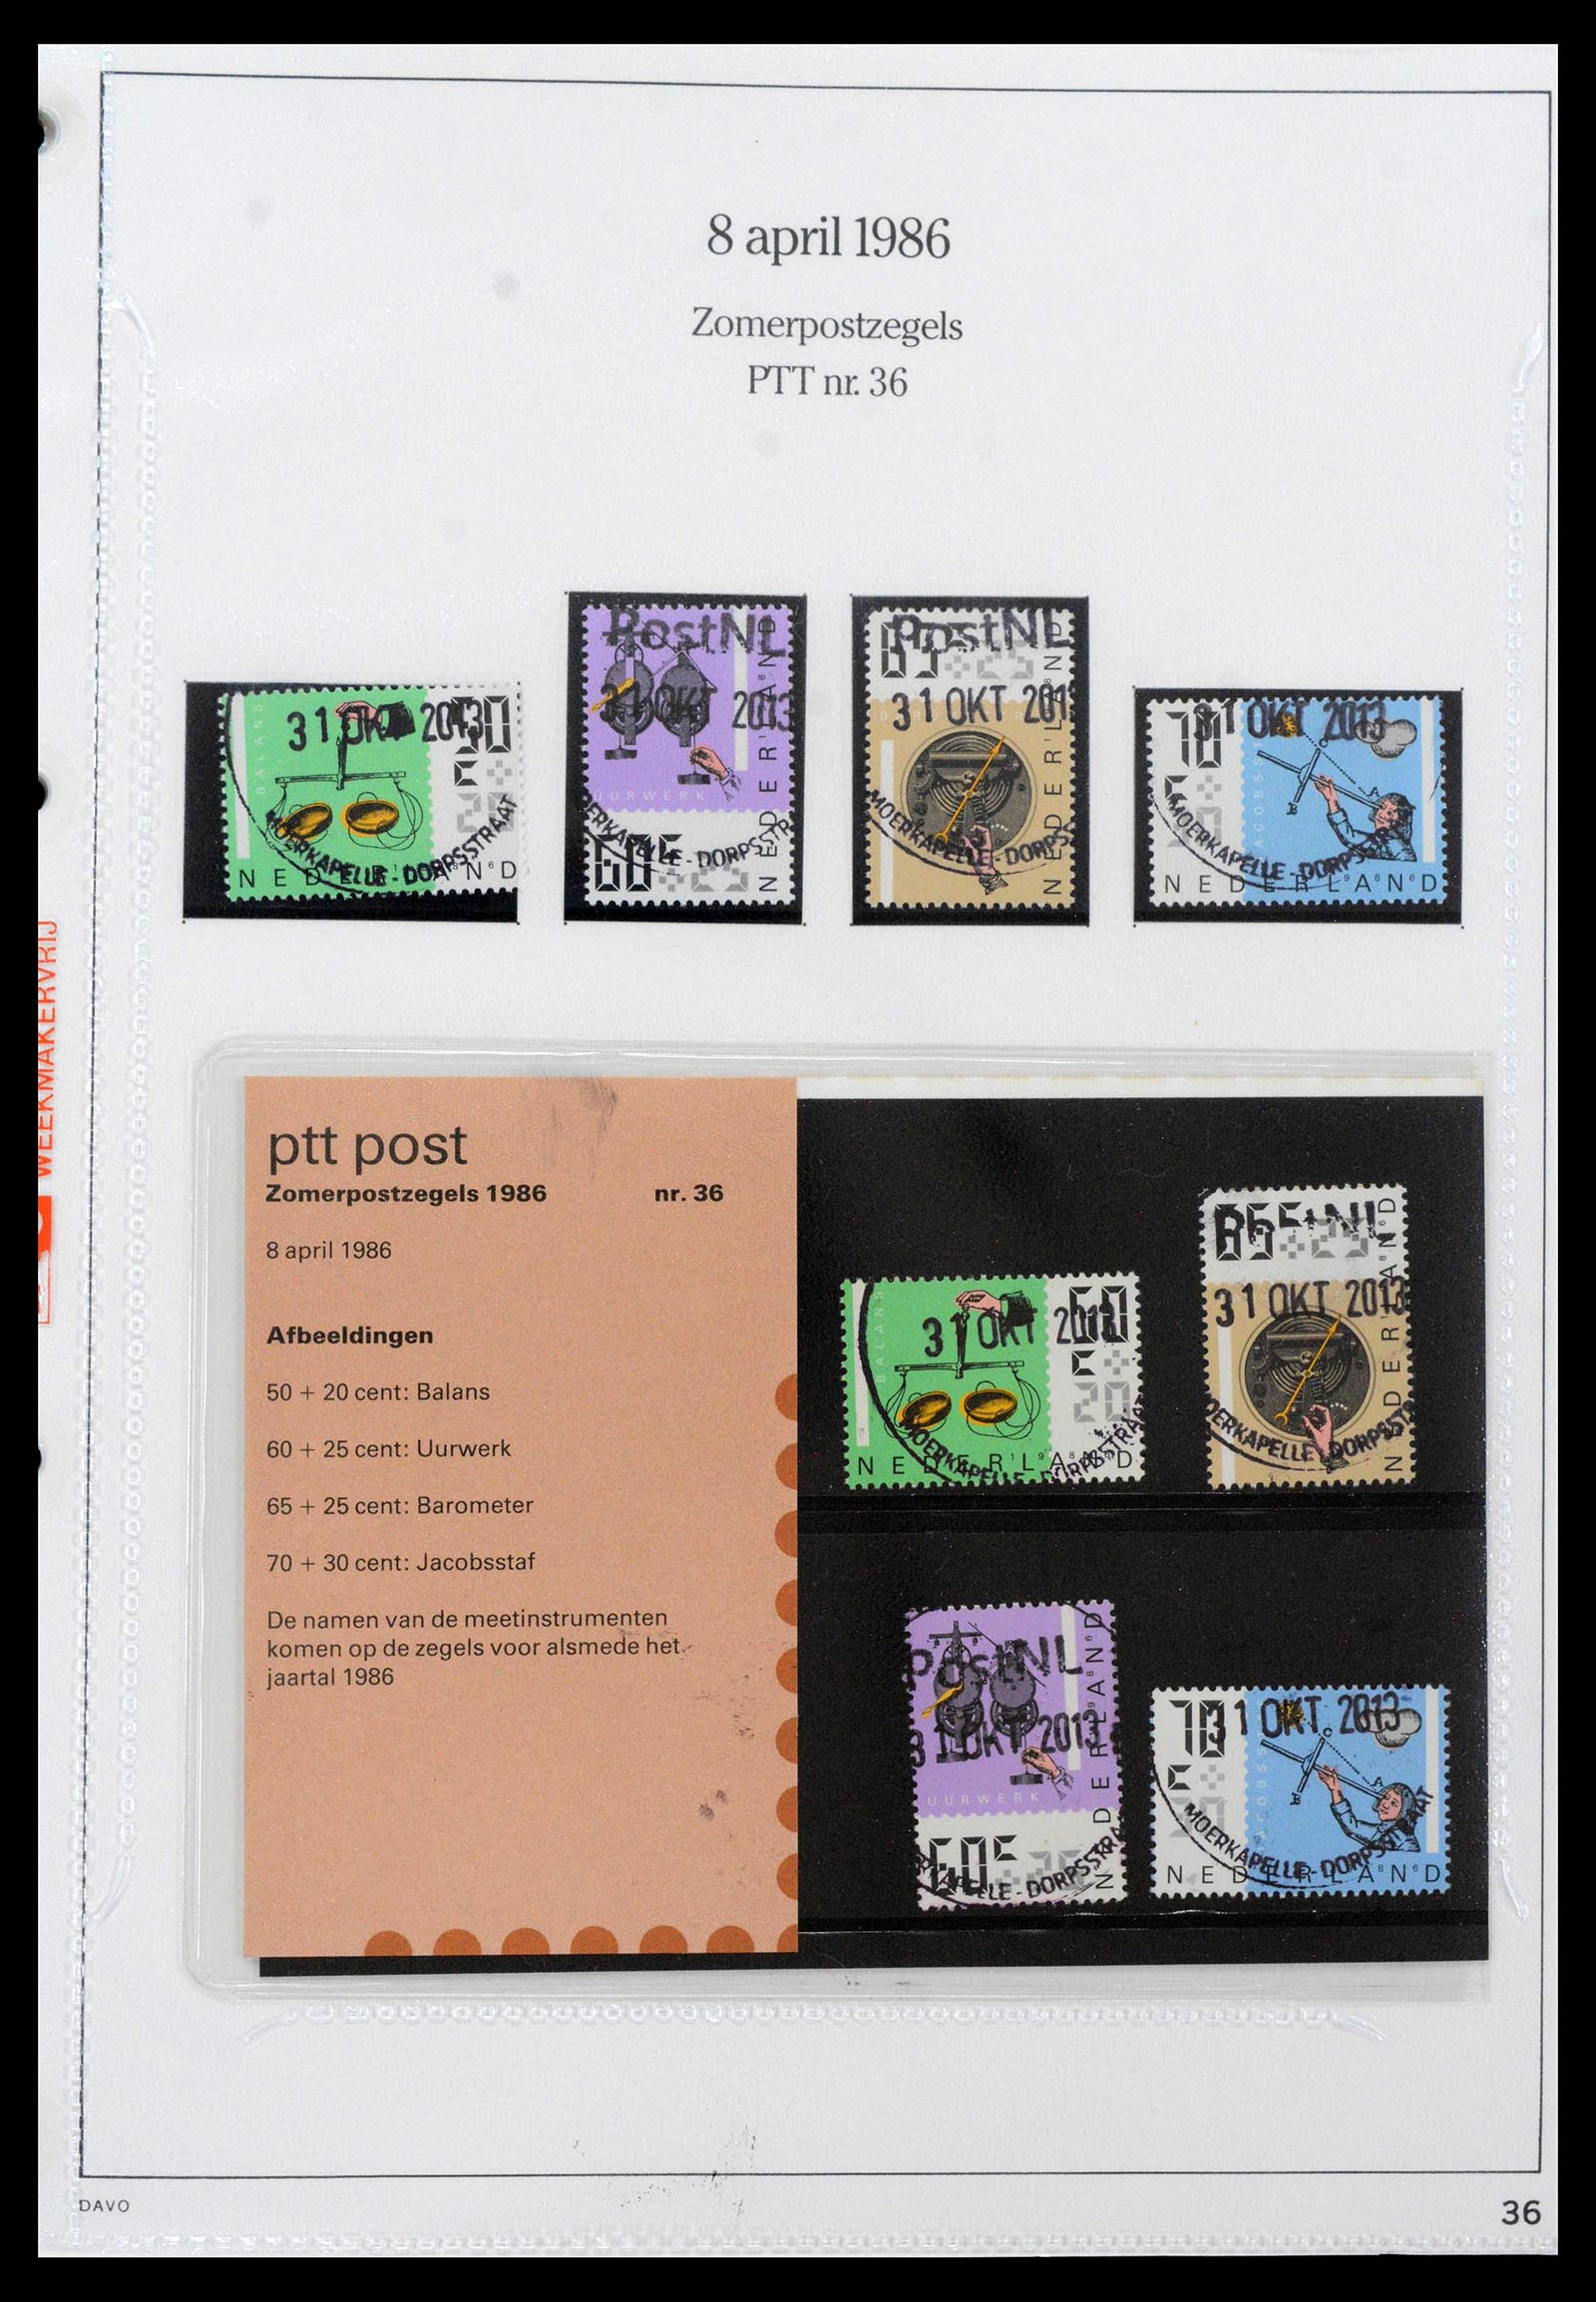 39121 0036 - Stamp collection 39121 Netherlands presentationpacks 1982-2001.